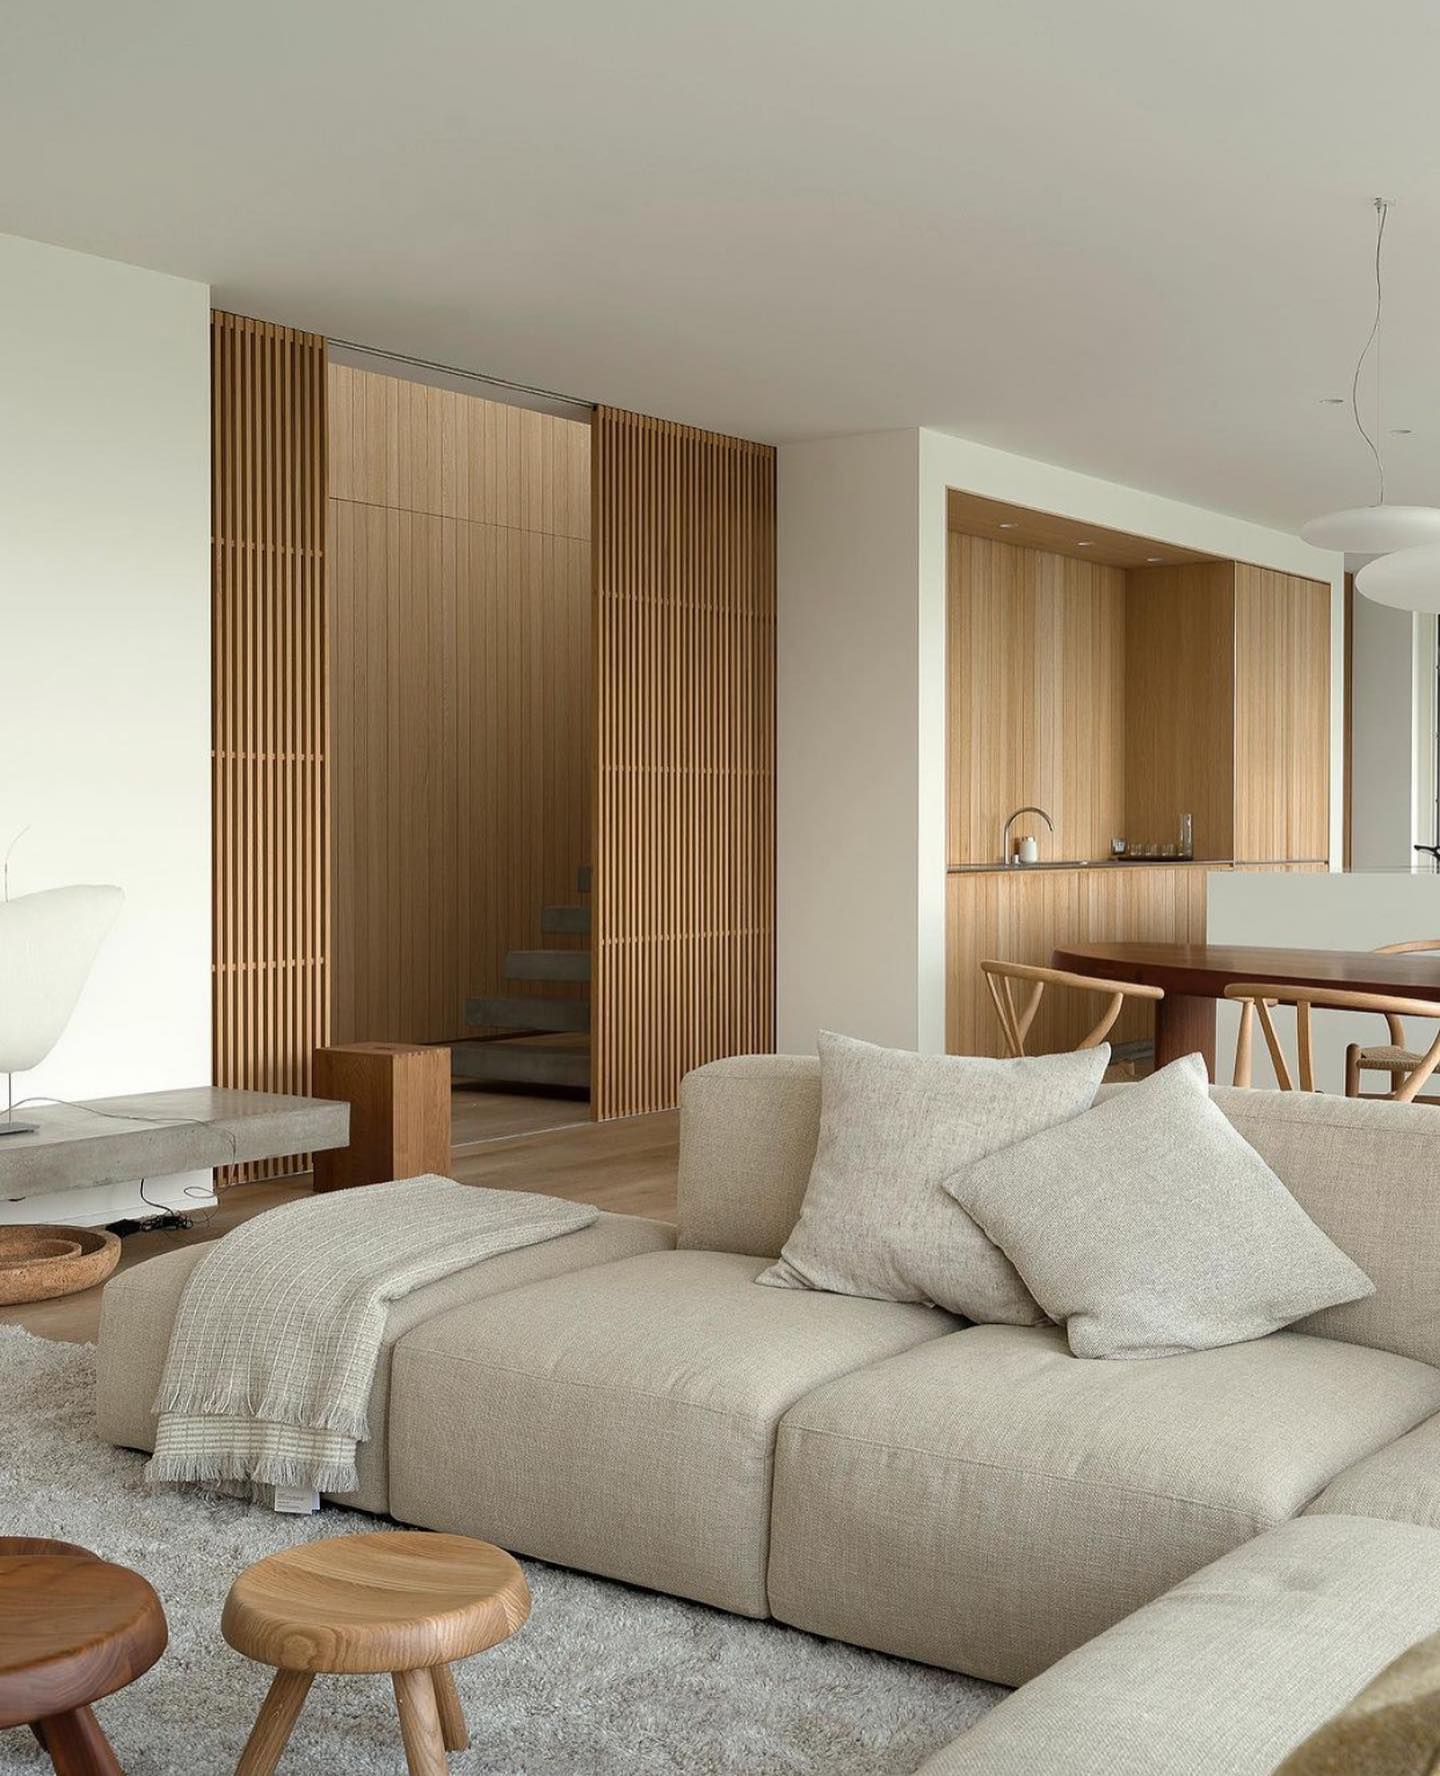 Stiligt - Ett vardagsrum med en snygg soffa och modernt soffbord designat av inredningsdesign.